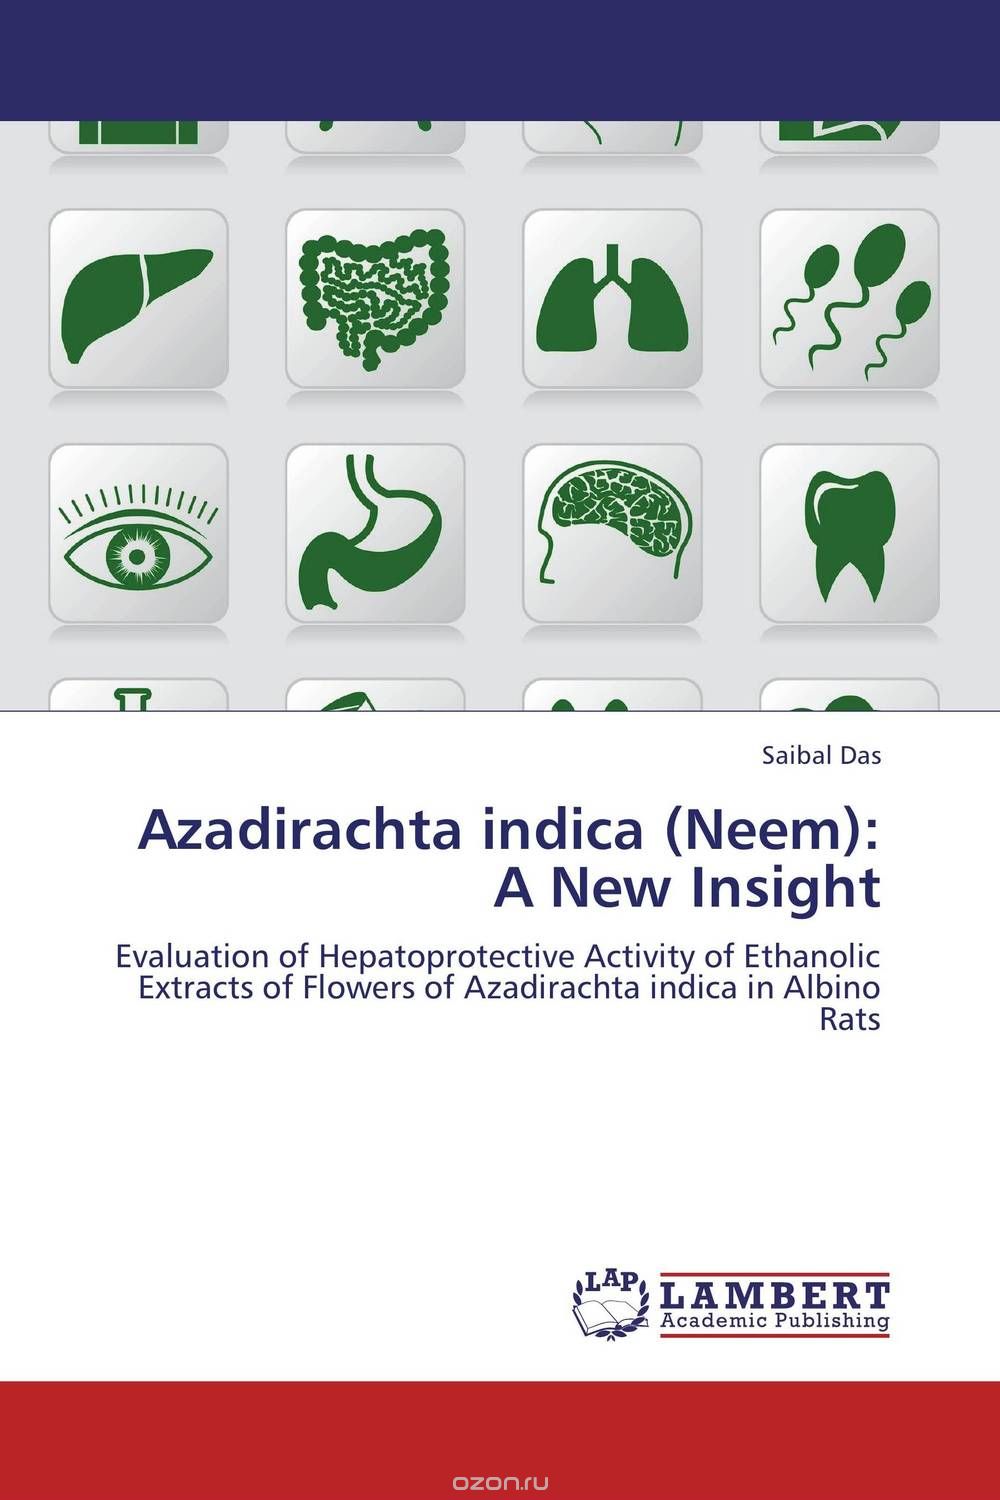 Скачать книгу "Azadirachta indica (Neem): A New Insight"